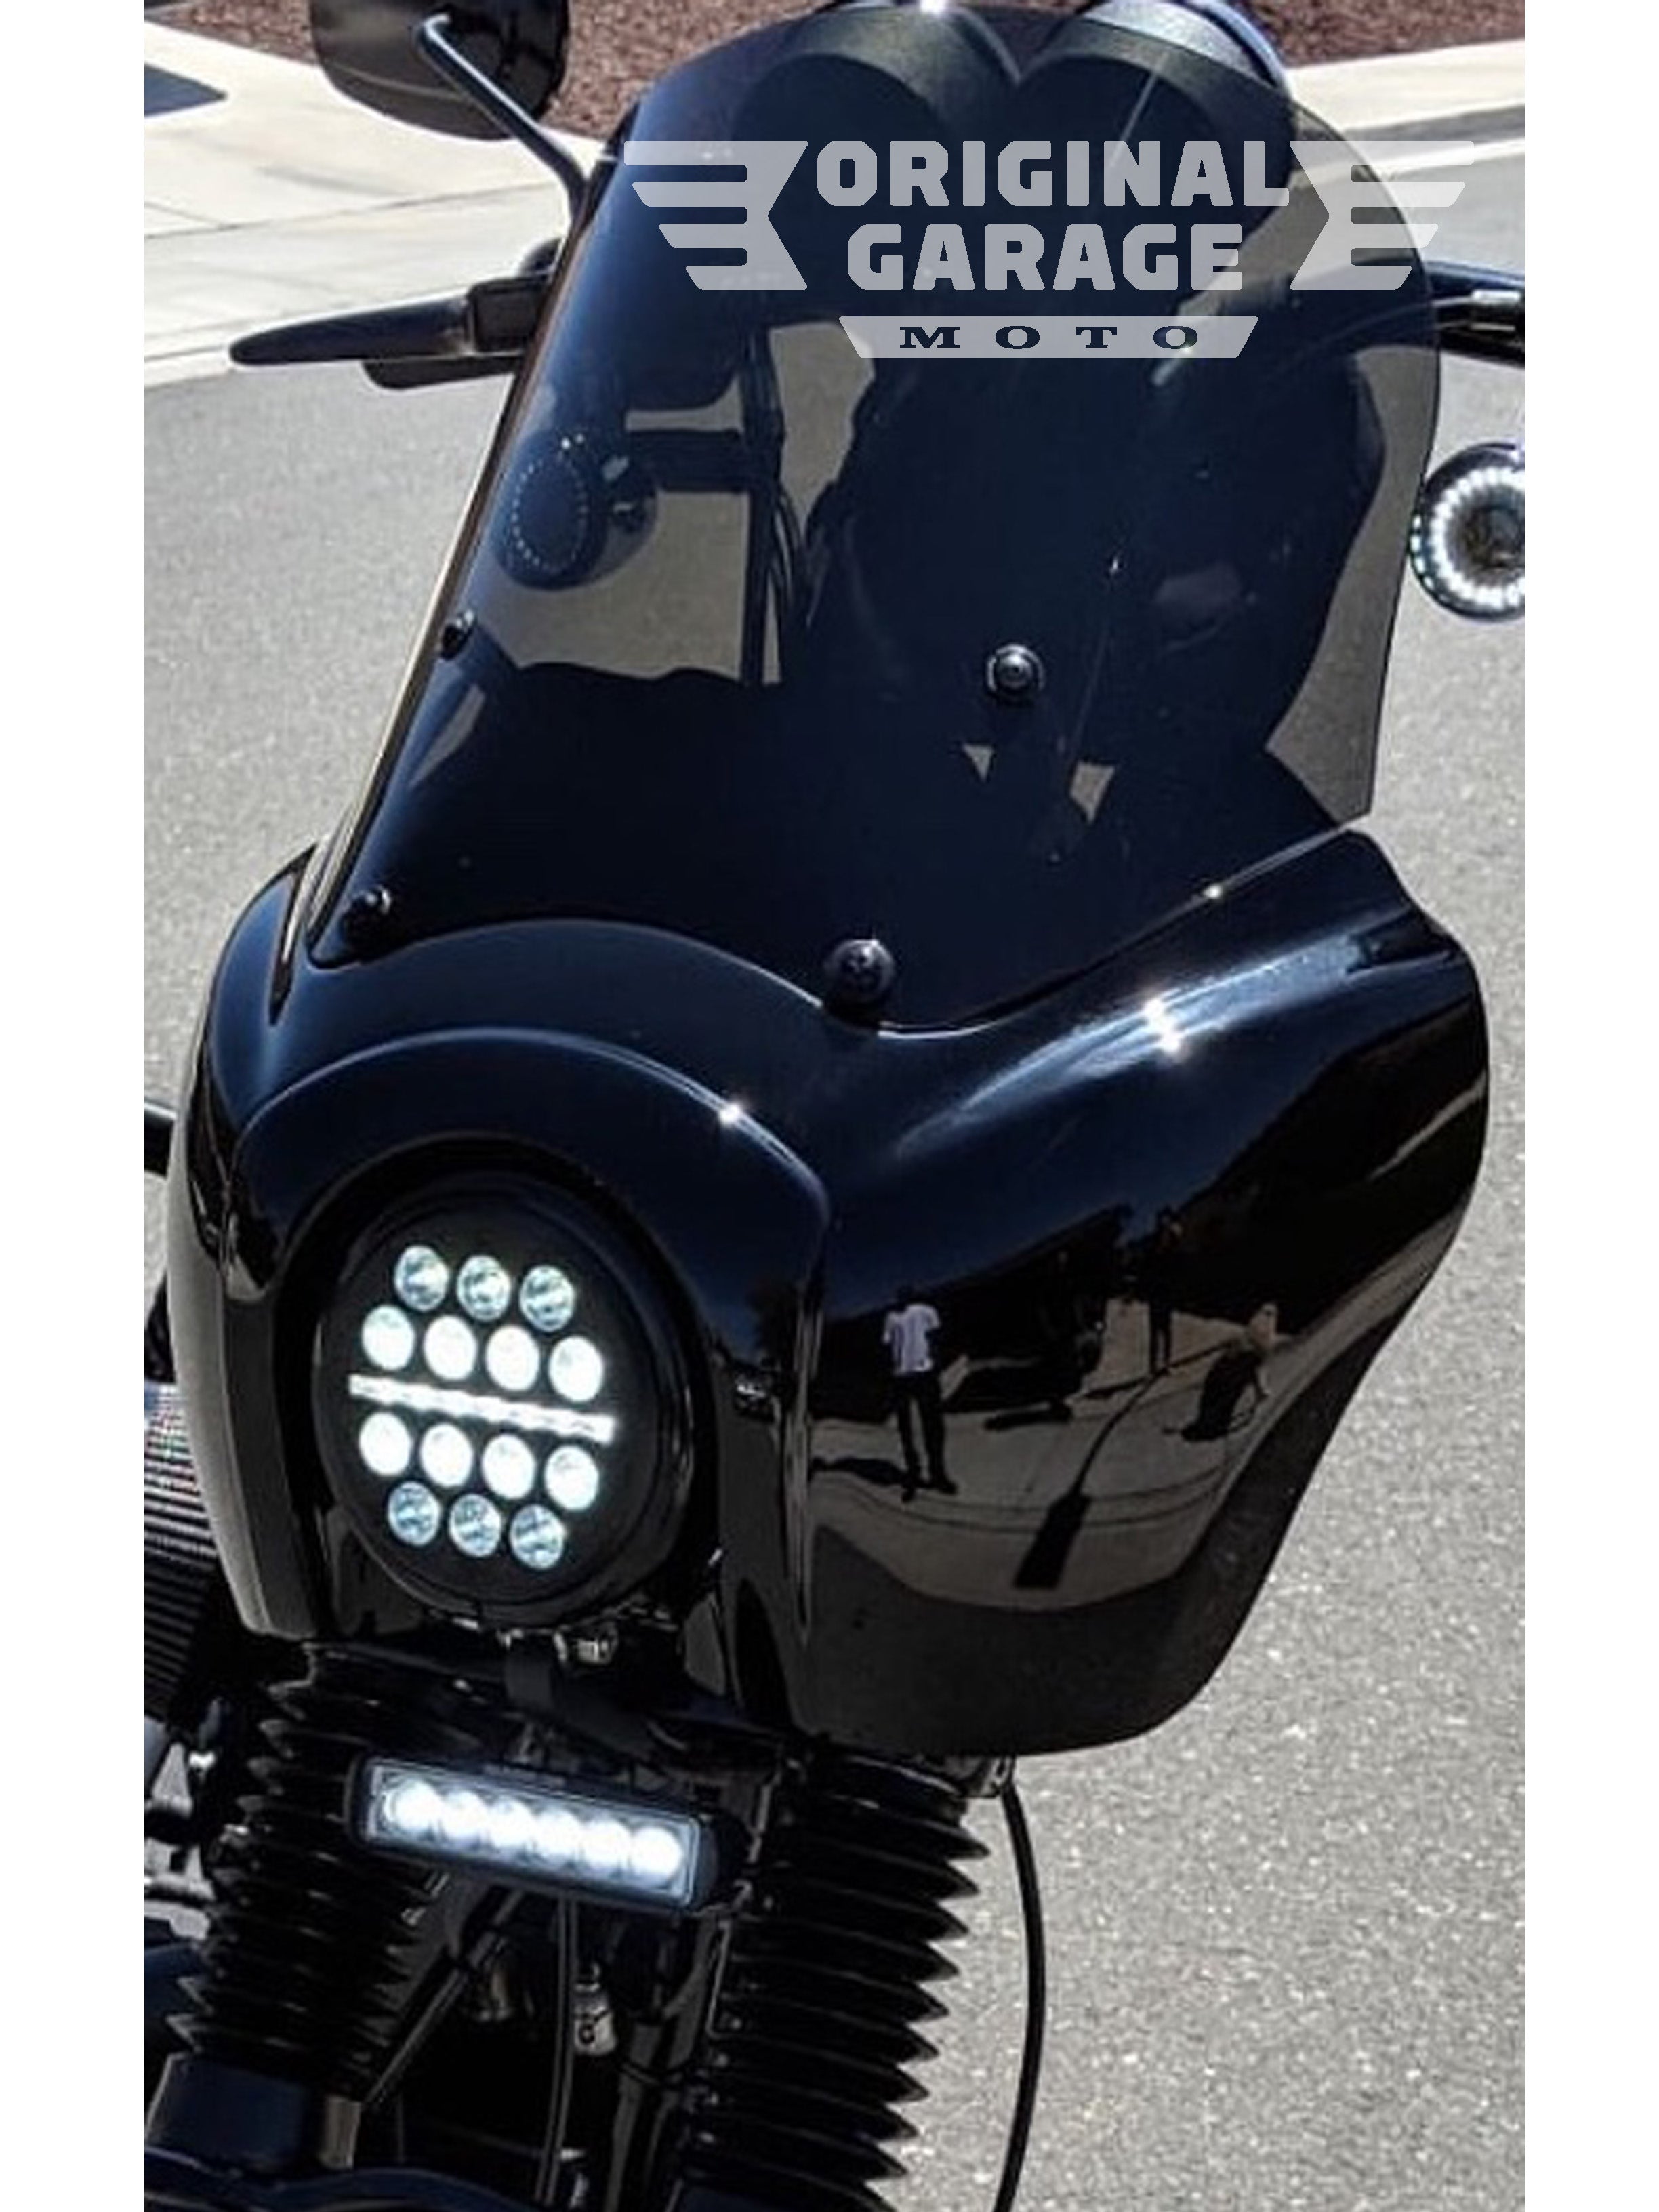 5.75 OG X-series LED Headlight for Harley-Davidson